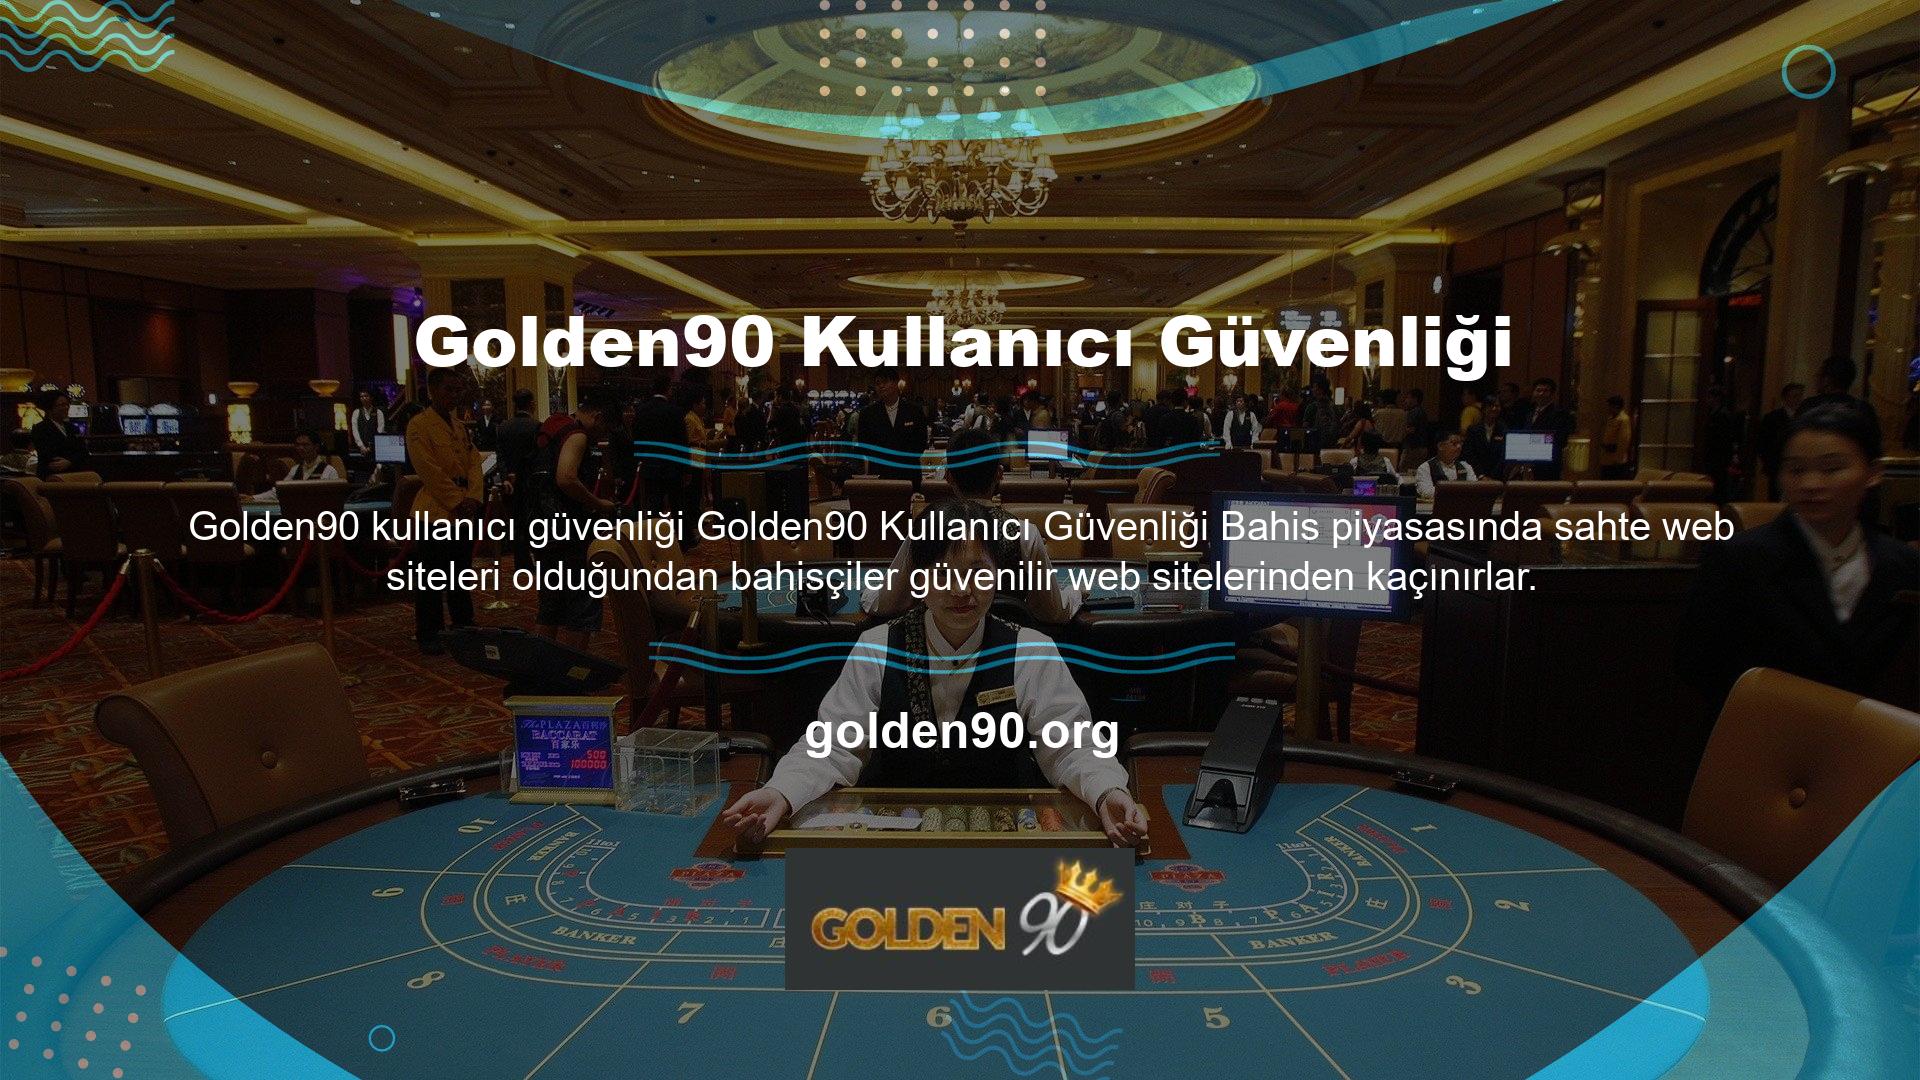 Bu nedenle Golden90, sitenin ve kullanıcılarının güvenliğini sağlamak için ileri düzeyde önlemler almaktadır